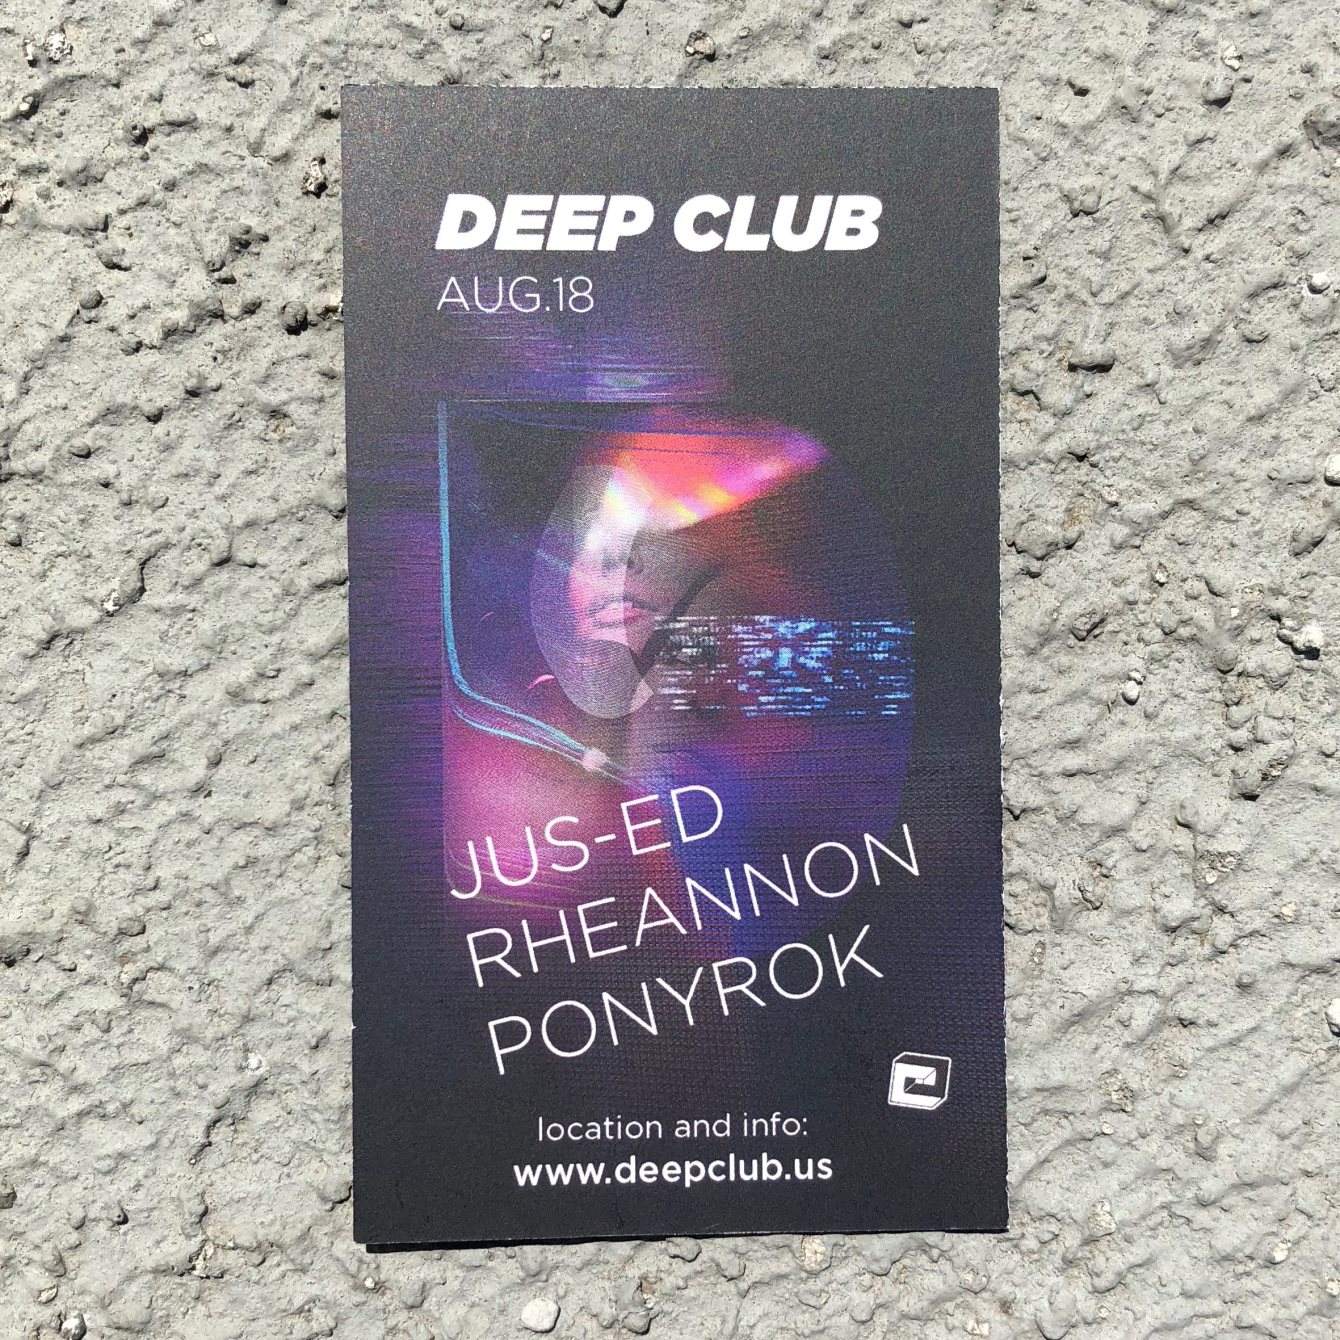 Deep Club with DJ Jus-Ed - Página frontal